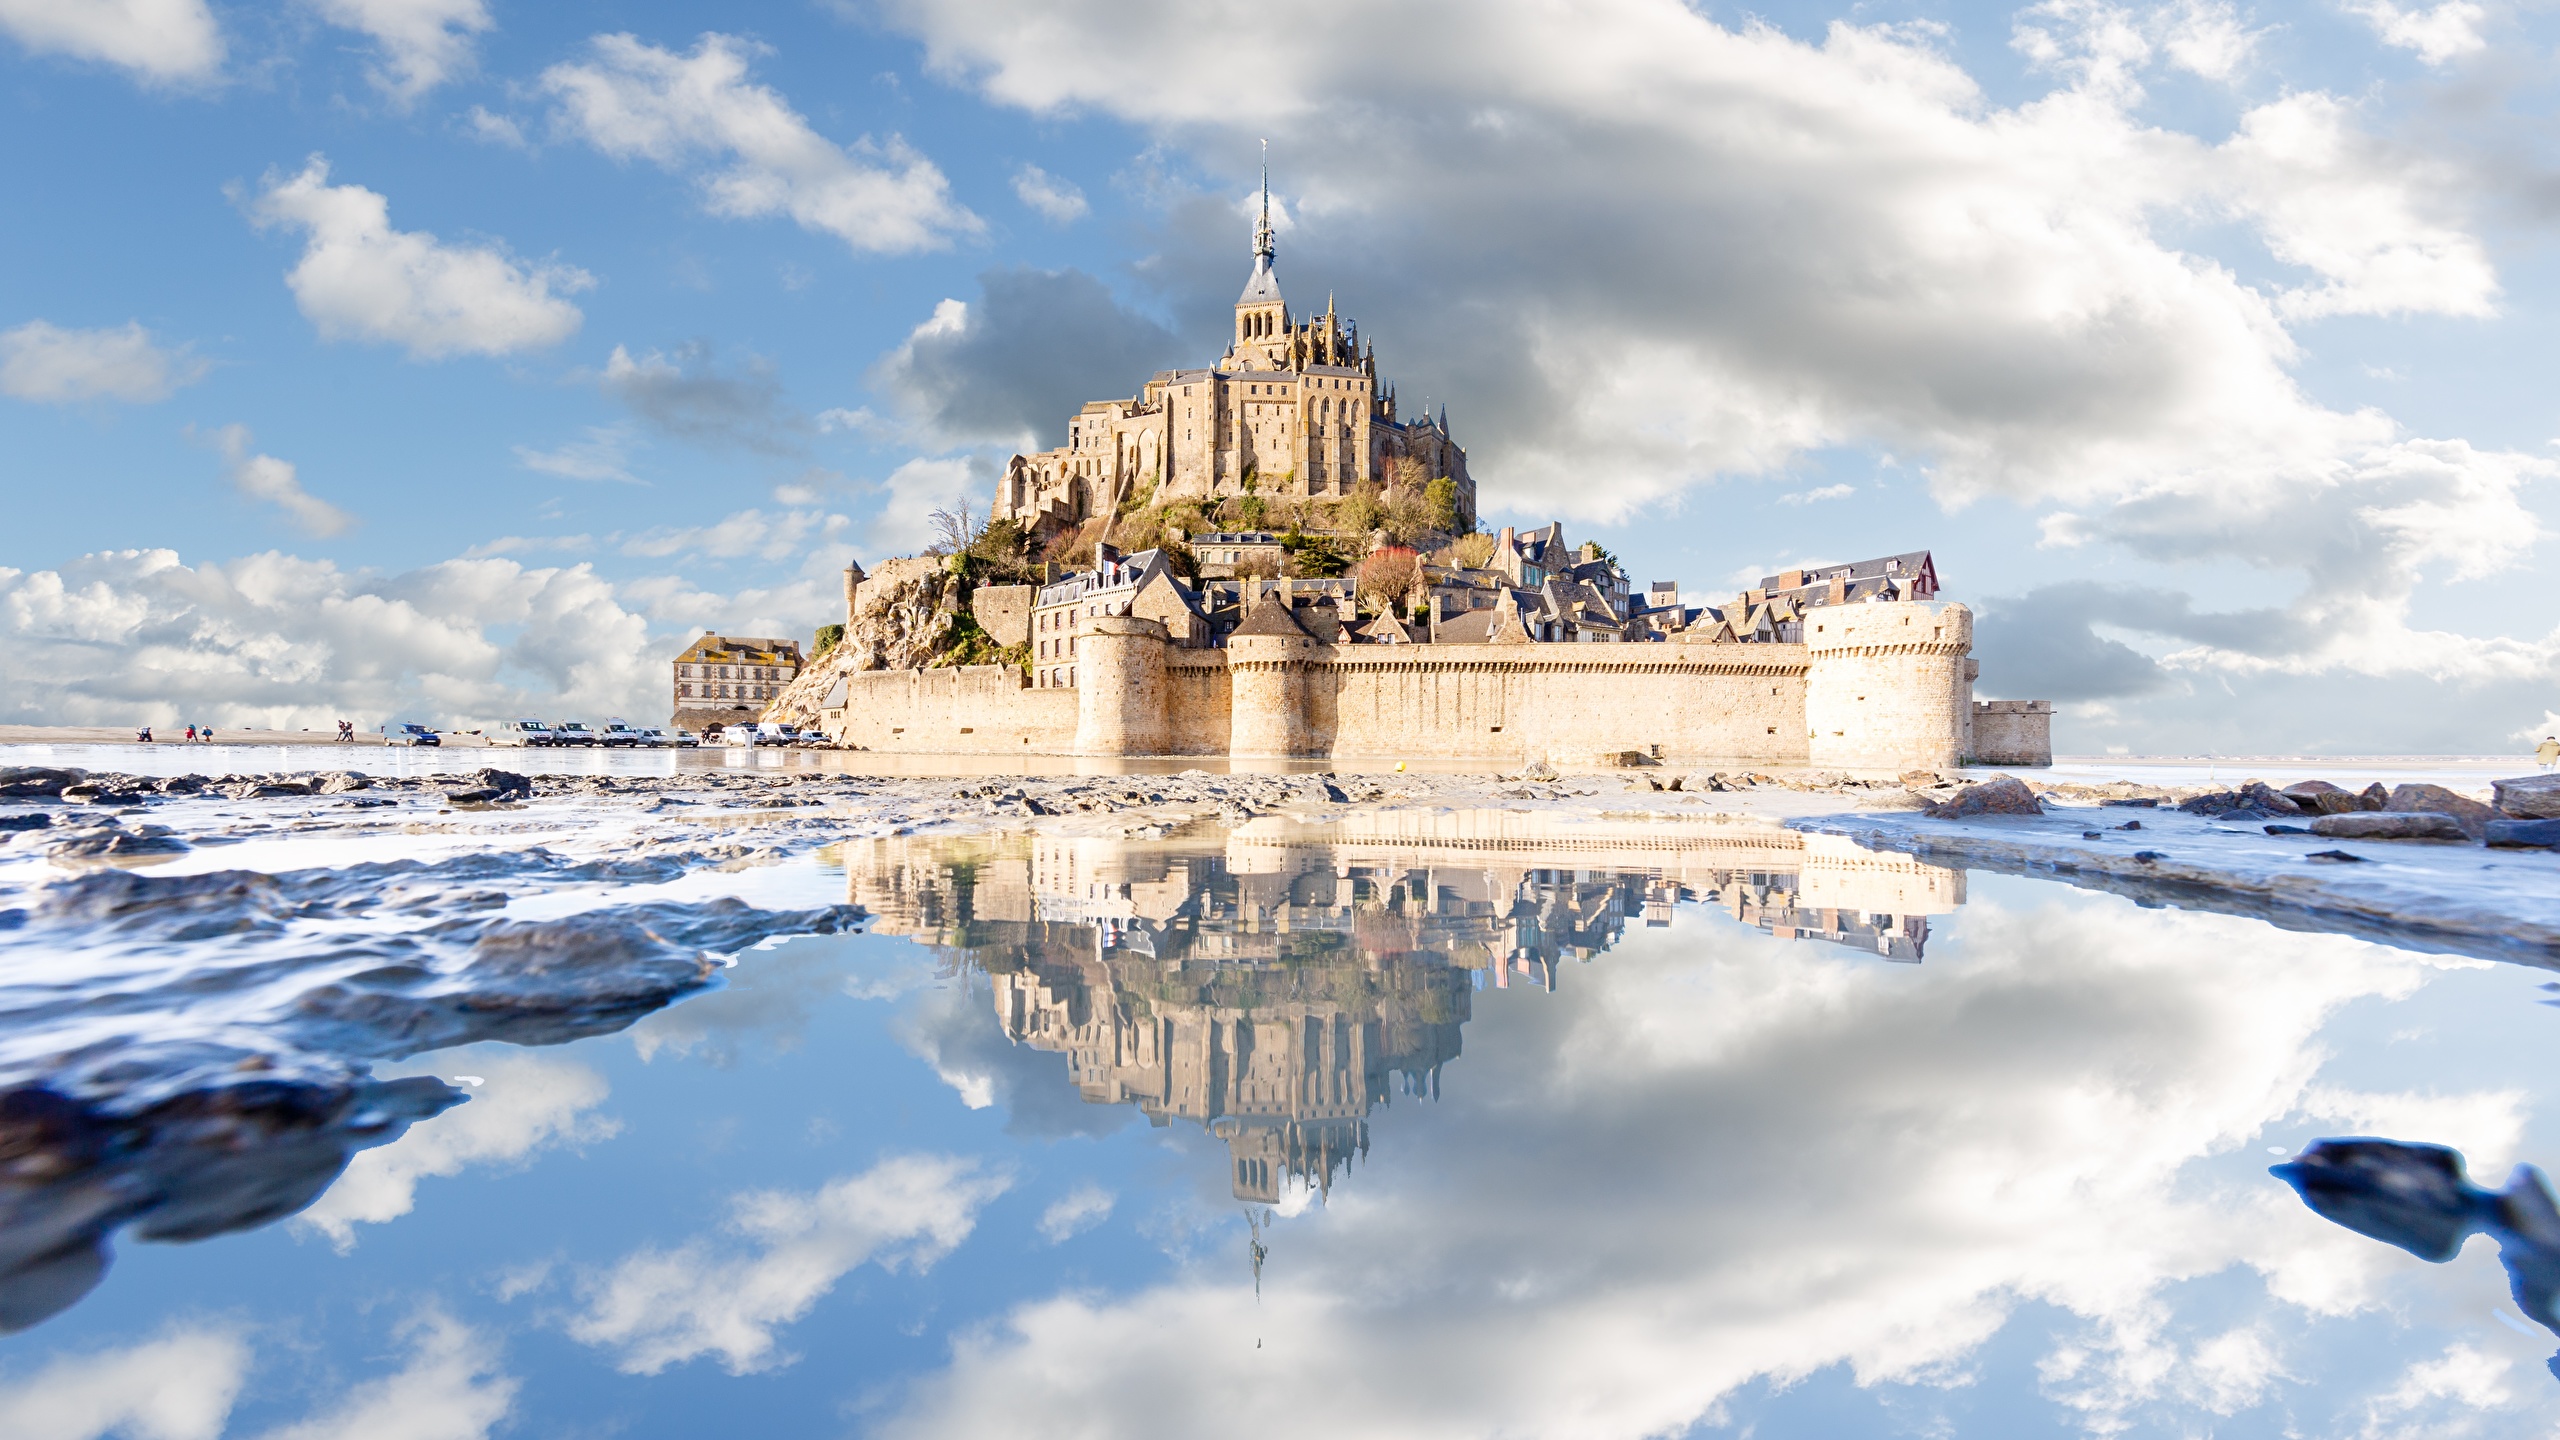 Le Mont Saint Michel Winter , HD Wallpaper & Backgrounds